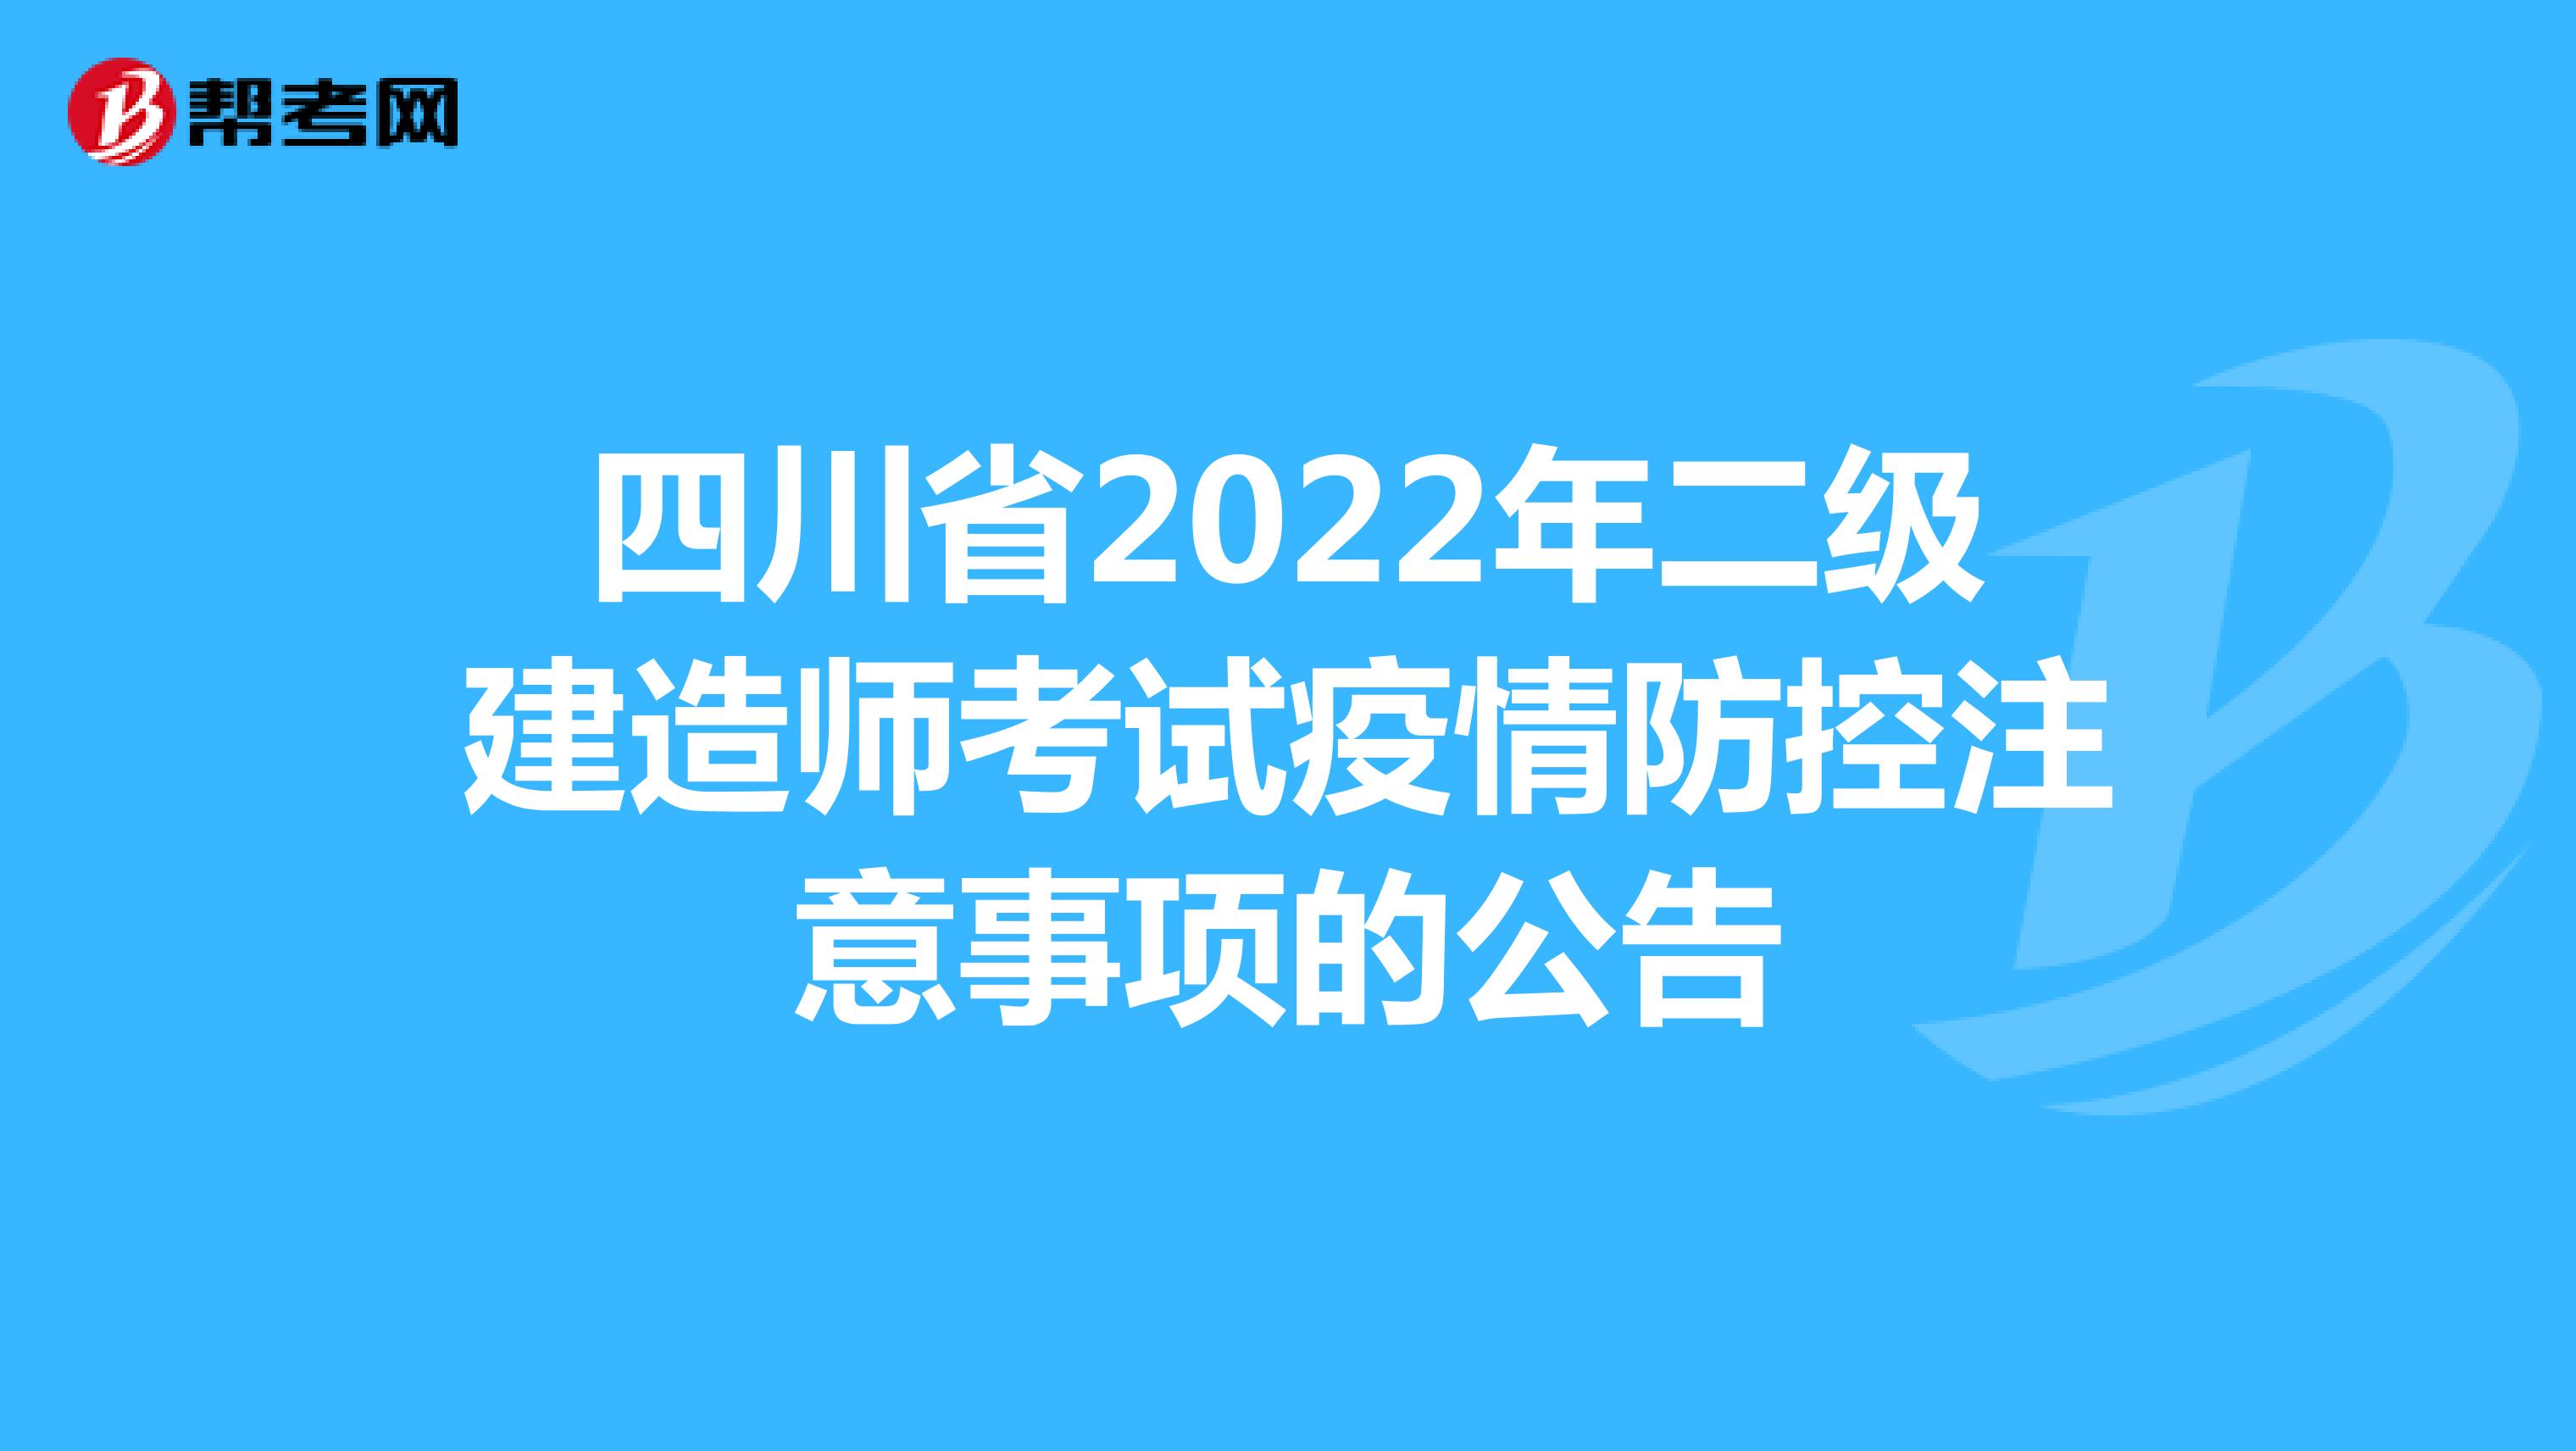 四川省2022年二级建造师考试疫情防控注意事项的公告